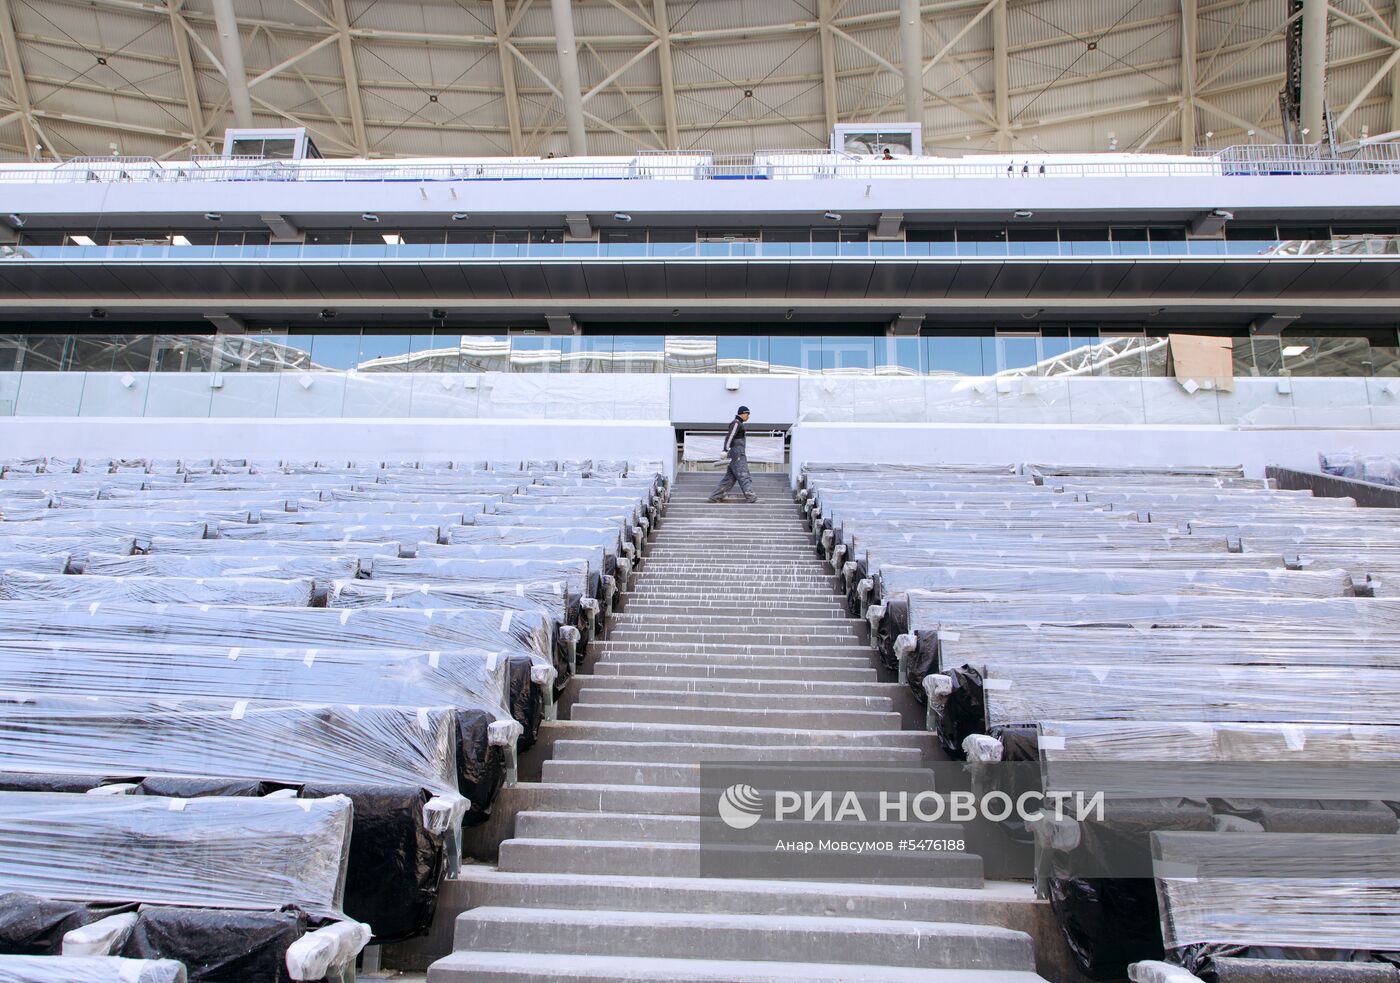 Укладка газона на стадионе "Самара-Арена"